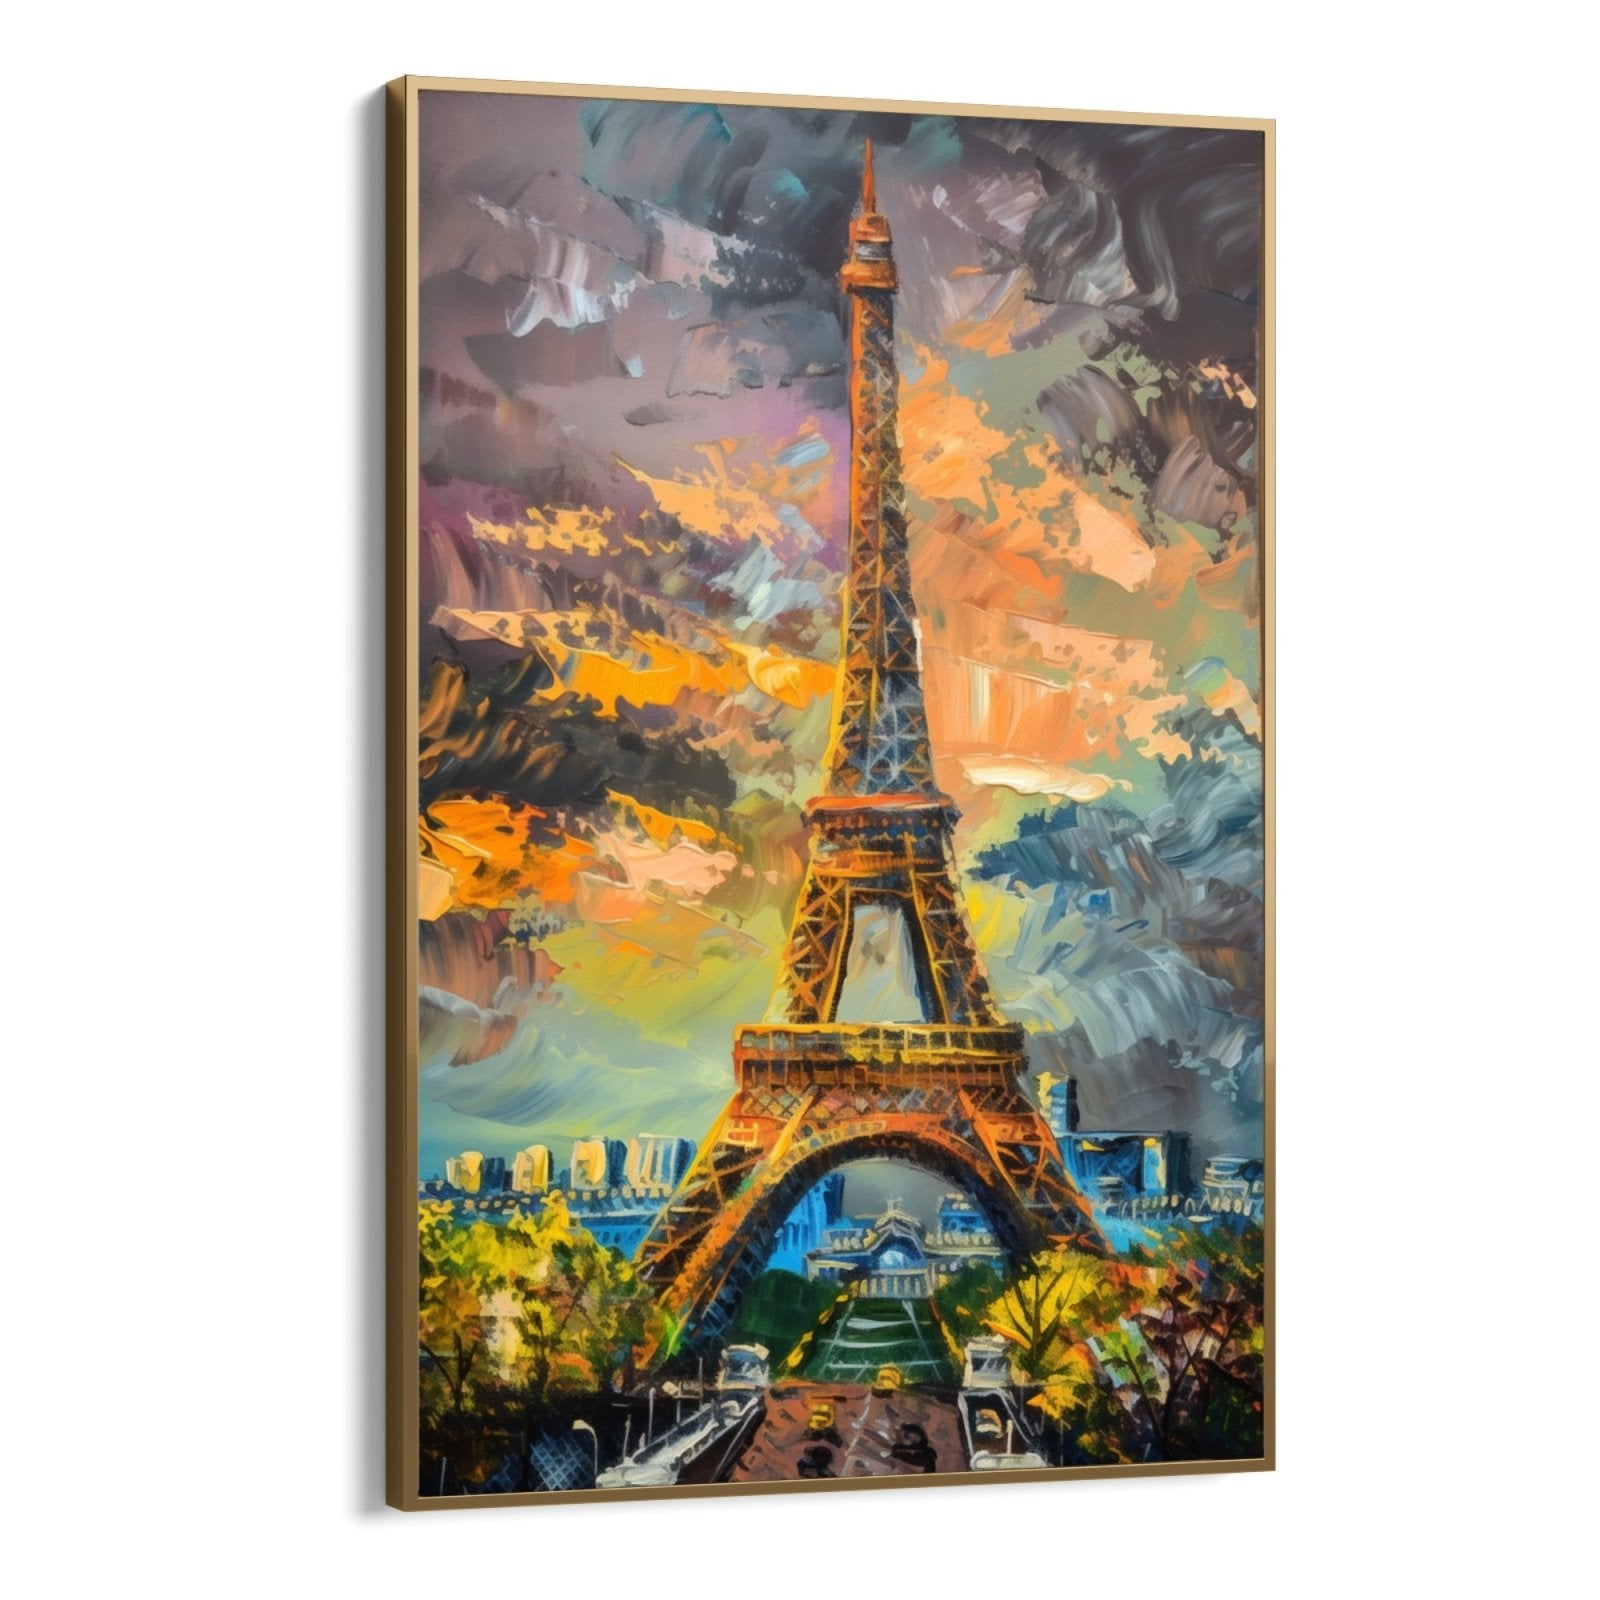 Miraggi di Tour Eiffel, Francia - CupidoDesign